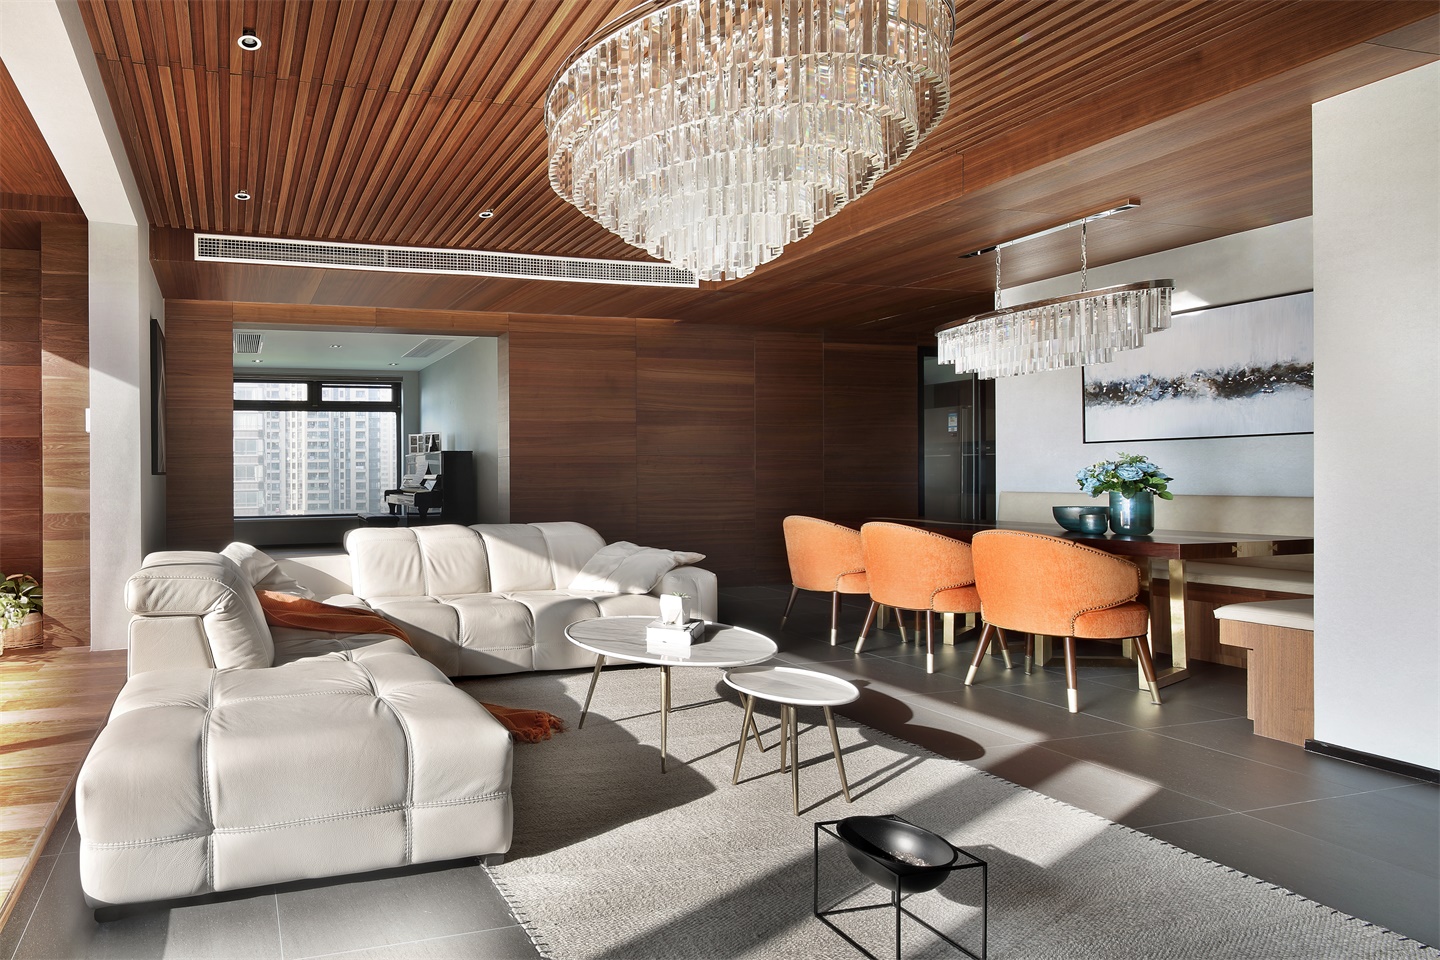 L型沙发呼应一字型餐桌，凸显精致生活品质，多元灯具尽显轻奢主义。